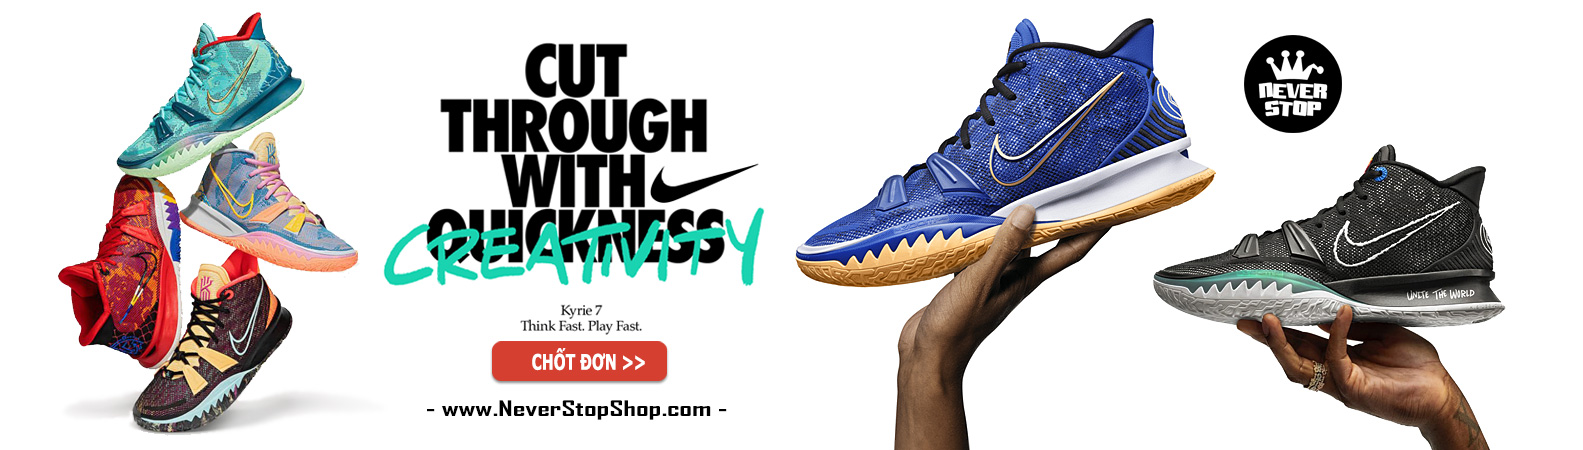 Giày Nike Kyrie 7 chuyên bóng rổ NeverStopShop